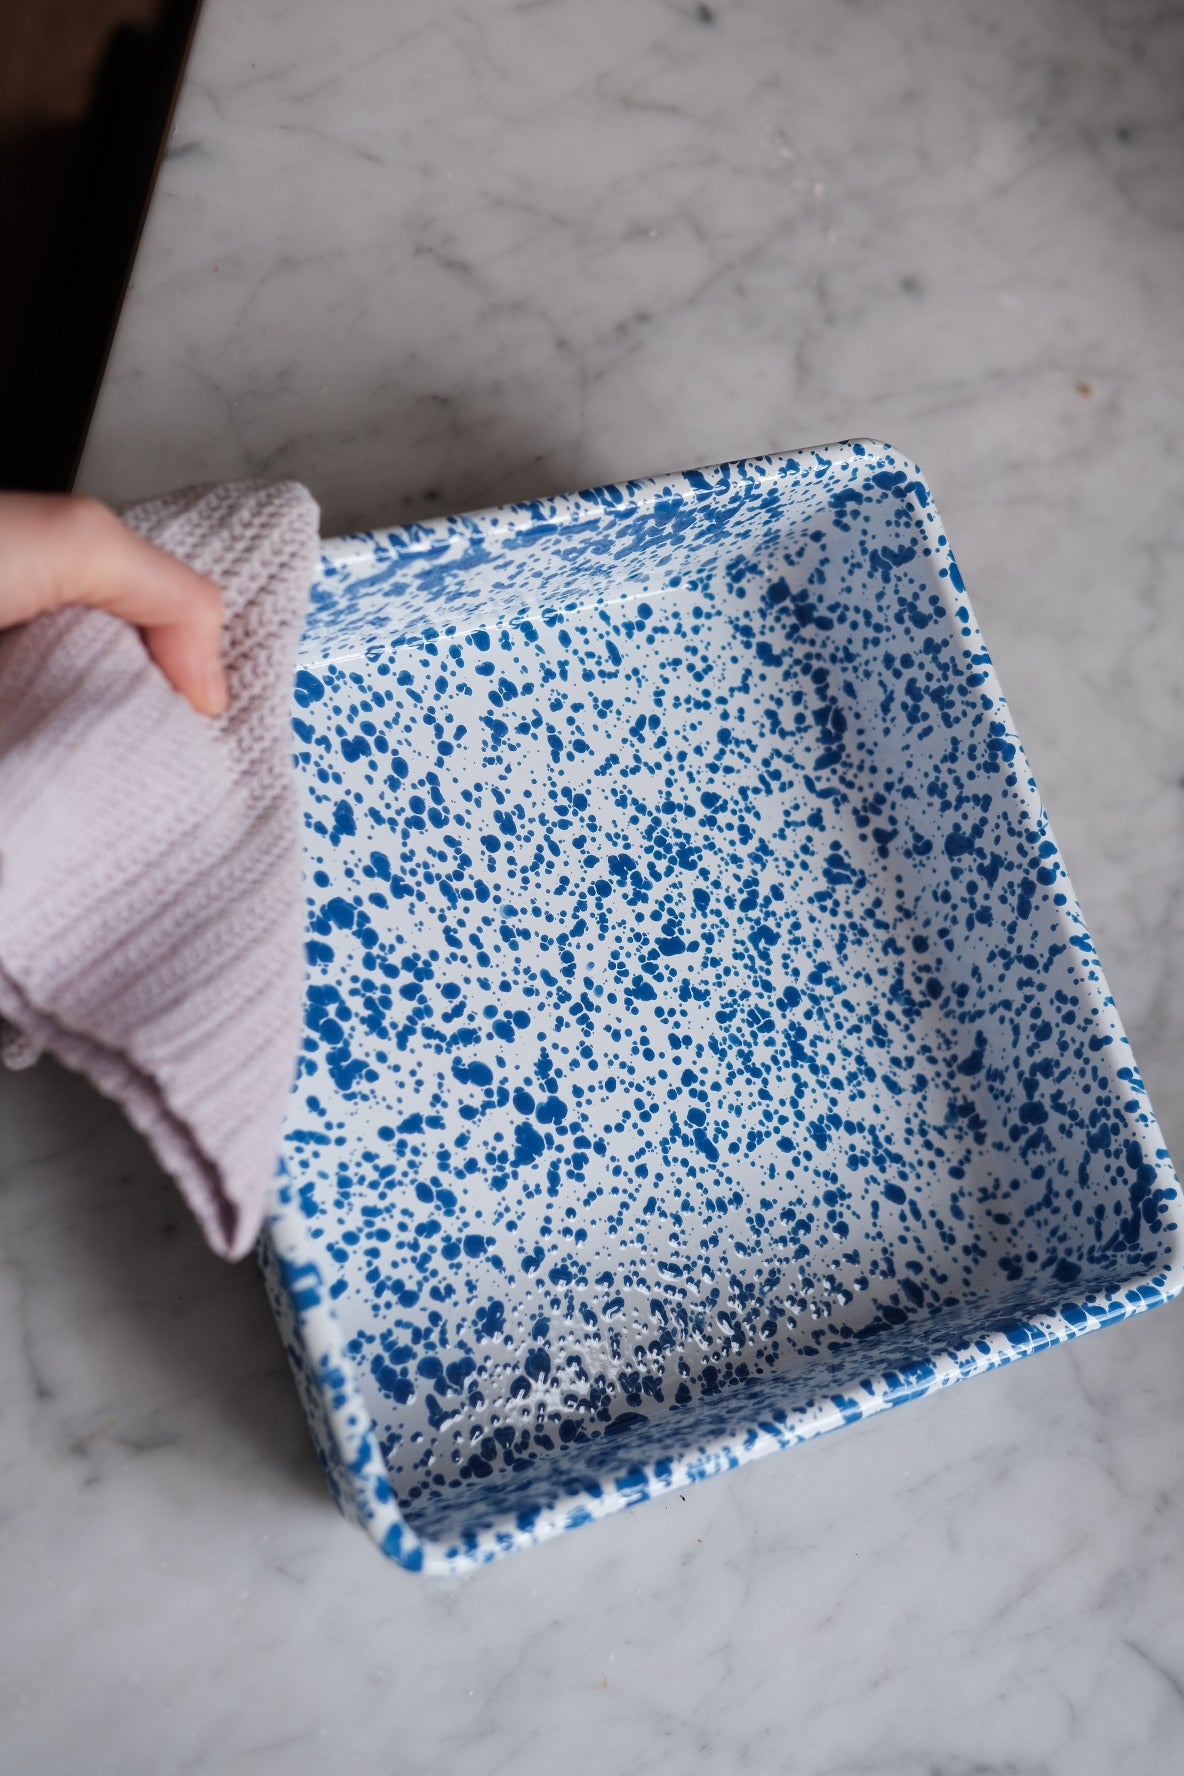 Square Dish • Enamel • Splatter Blue